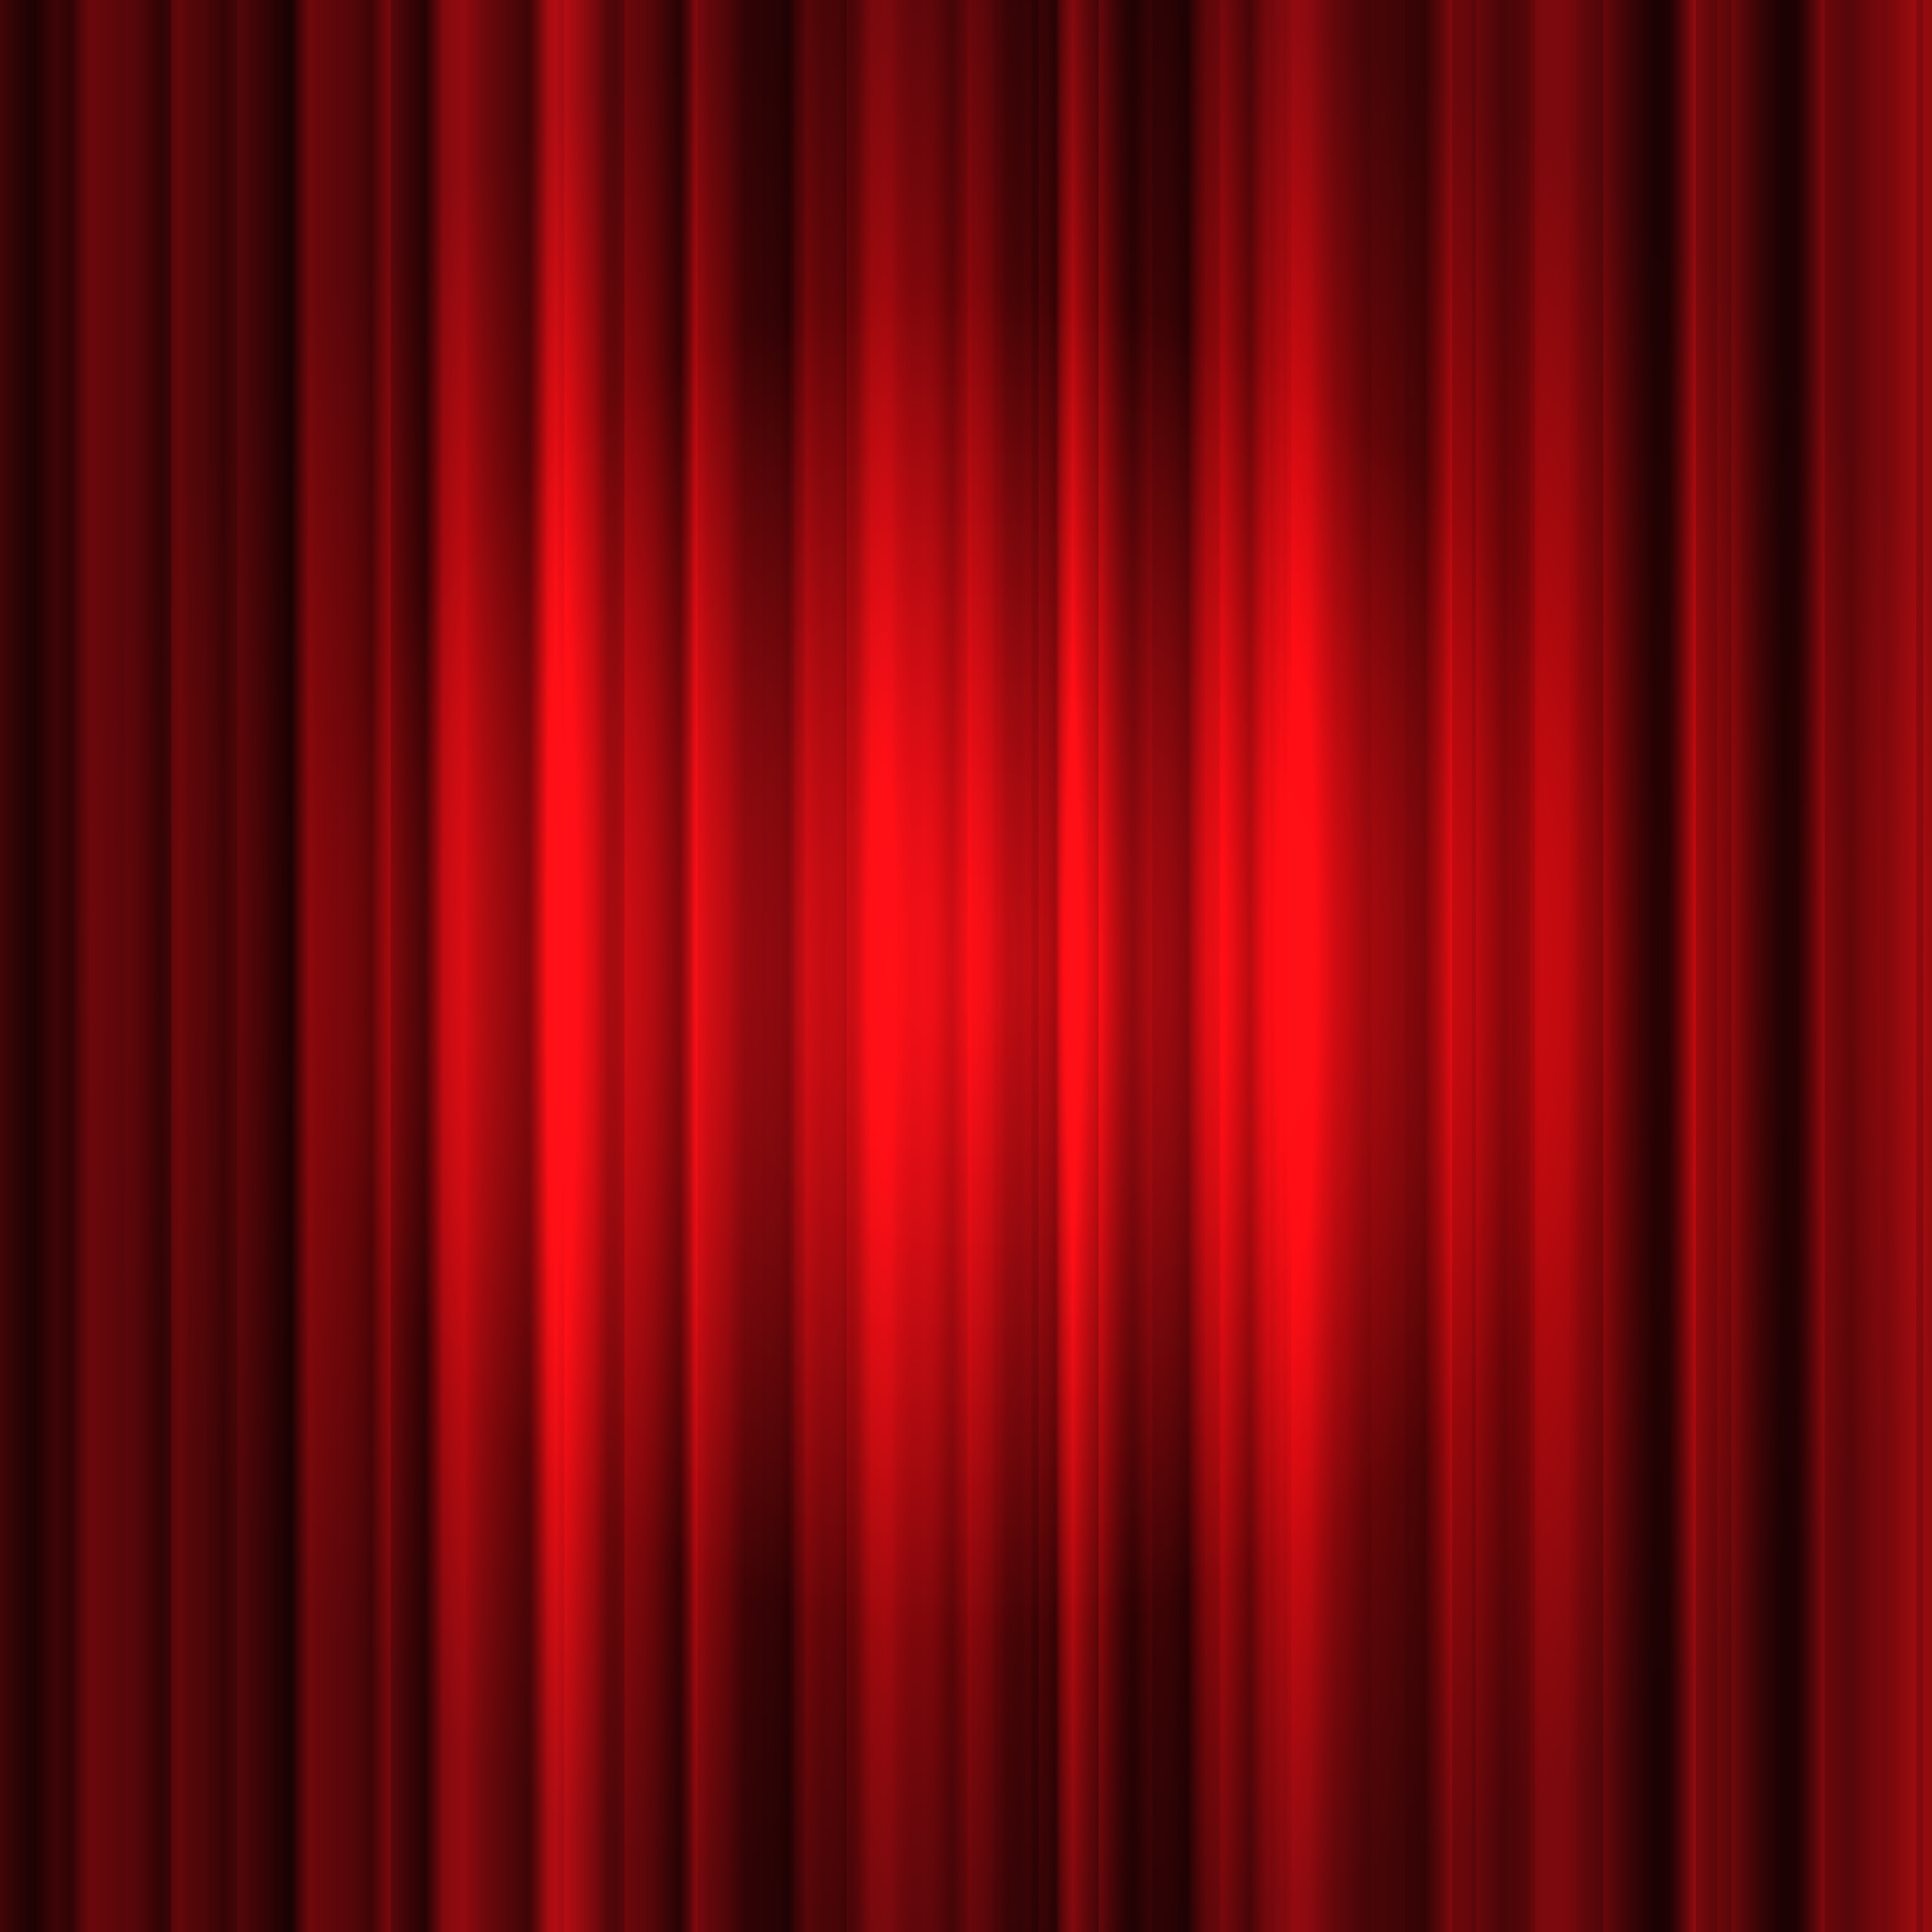 Sân khấu rèm đỏ sẽ là một điểm nhấn lớn cho các buổi biểu diễn hay sự kiện của bạn. Hình ảnh liên quan sẽ giúp bạn tưởng tượng và lựa chọn cho mình một sân khấu thật hoành tráng và đặc biệt.